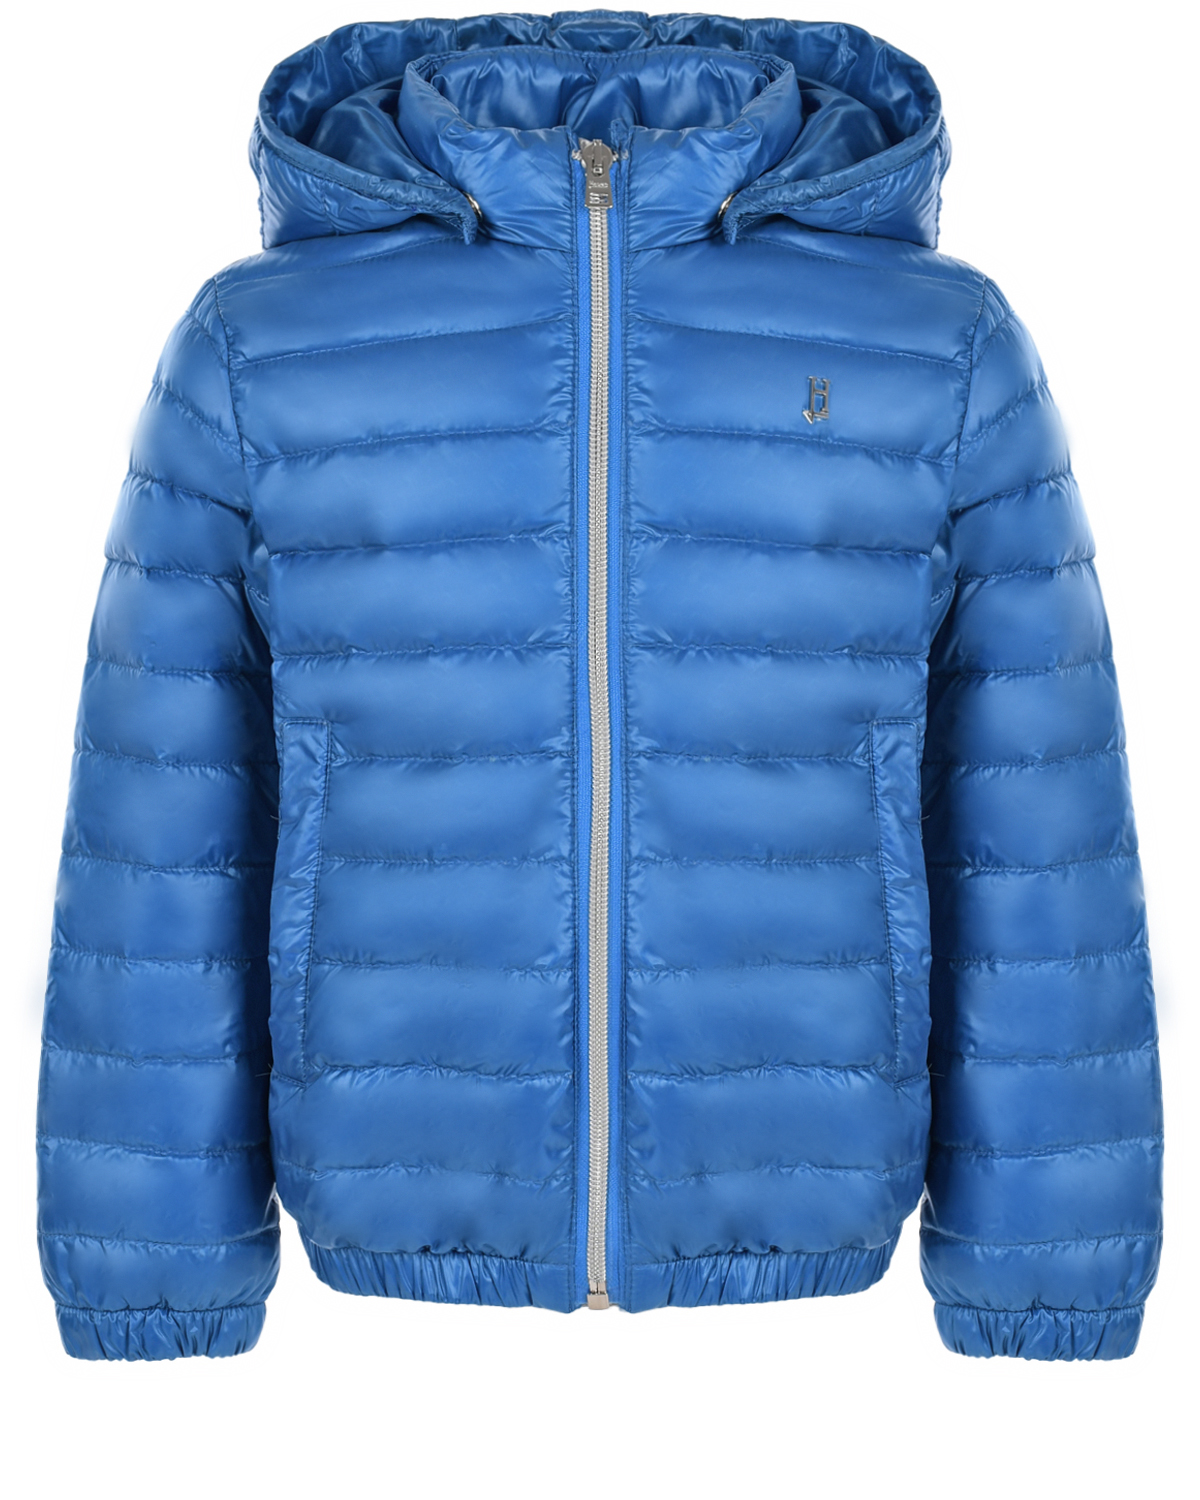 Ярко-синяя стеганая куртка Herno пальто пуховки кремового а herno детское